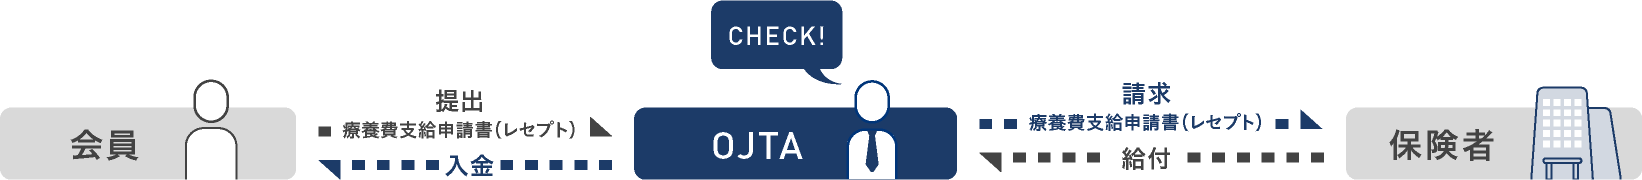 会員様が提出した療養費支給申請書（レセプト）をOJTAがチェックし、保険者に療養費を請求し会員様に入金します。